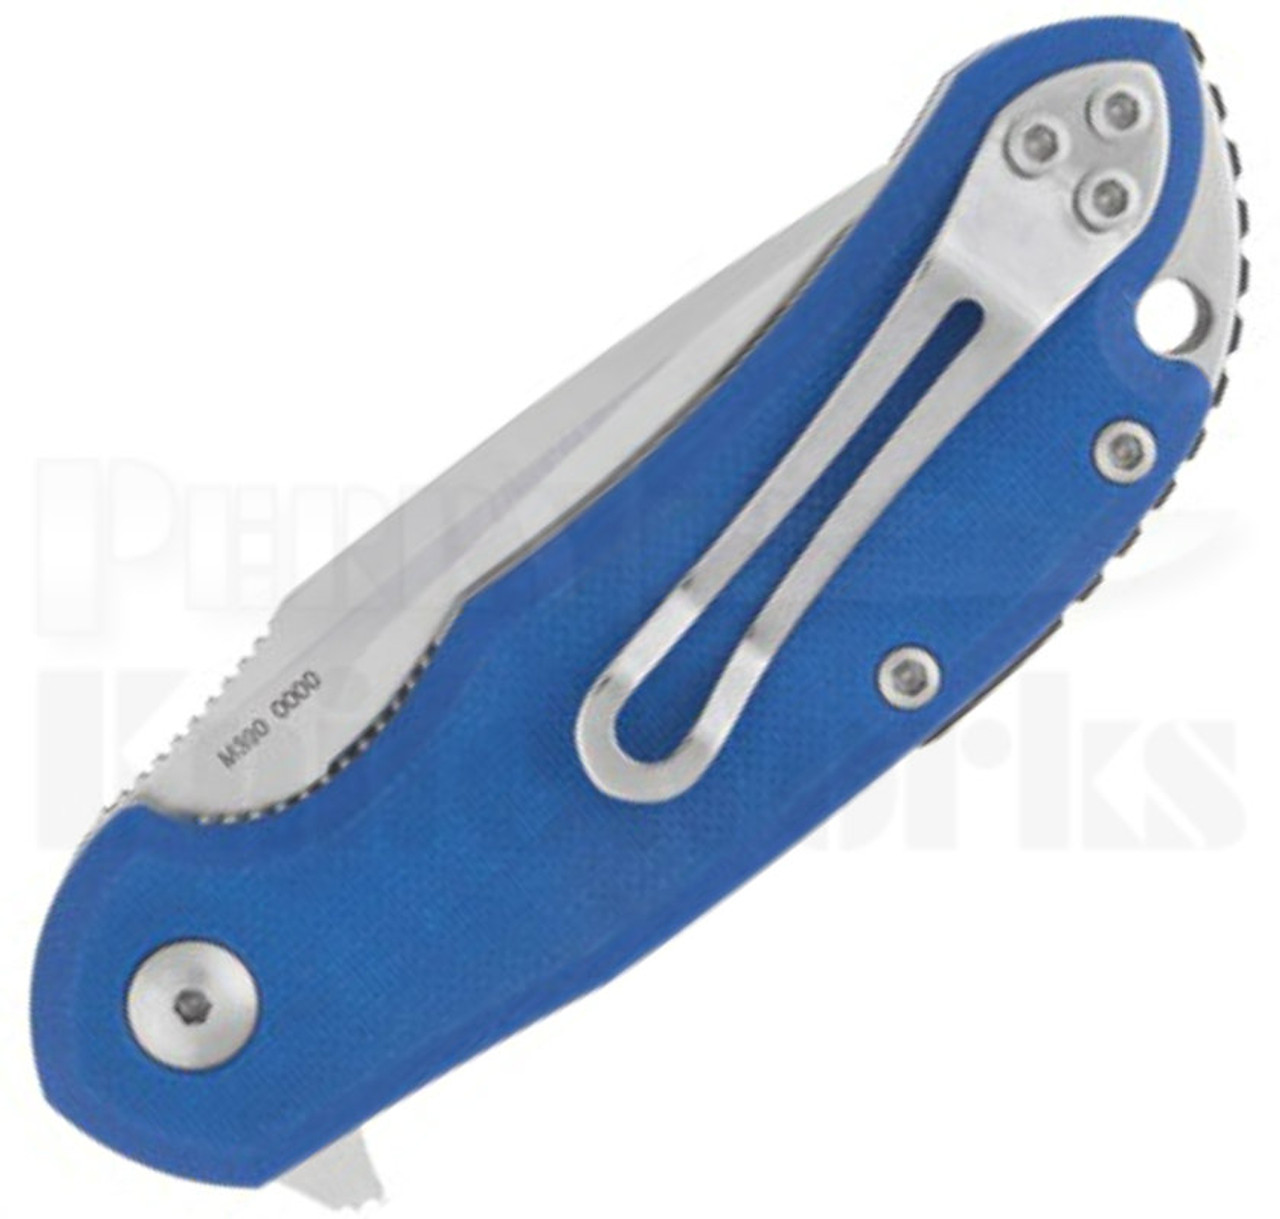 Steel Will Cutjack Mini Blue G10 Flipper Knife (3.0" Satin) C22M-2BL